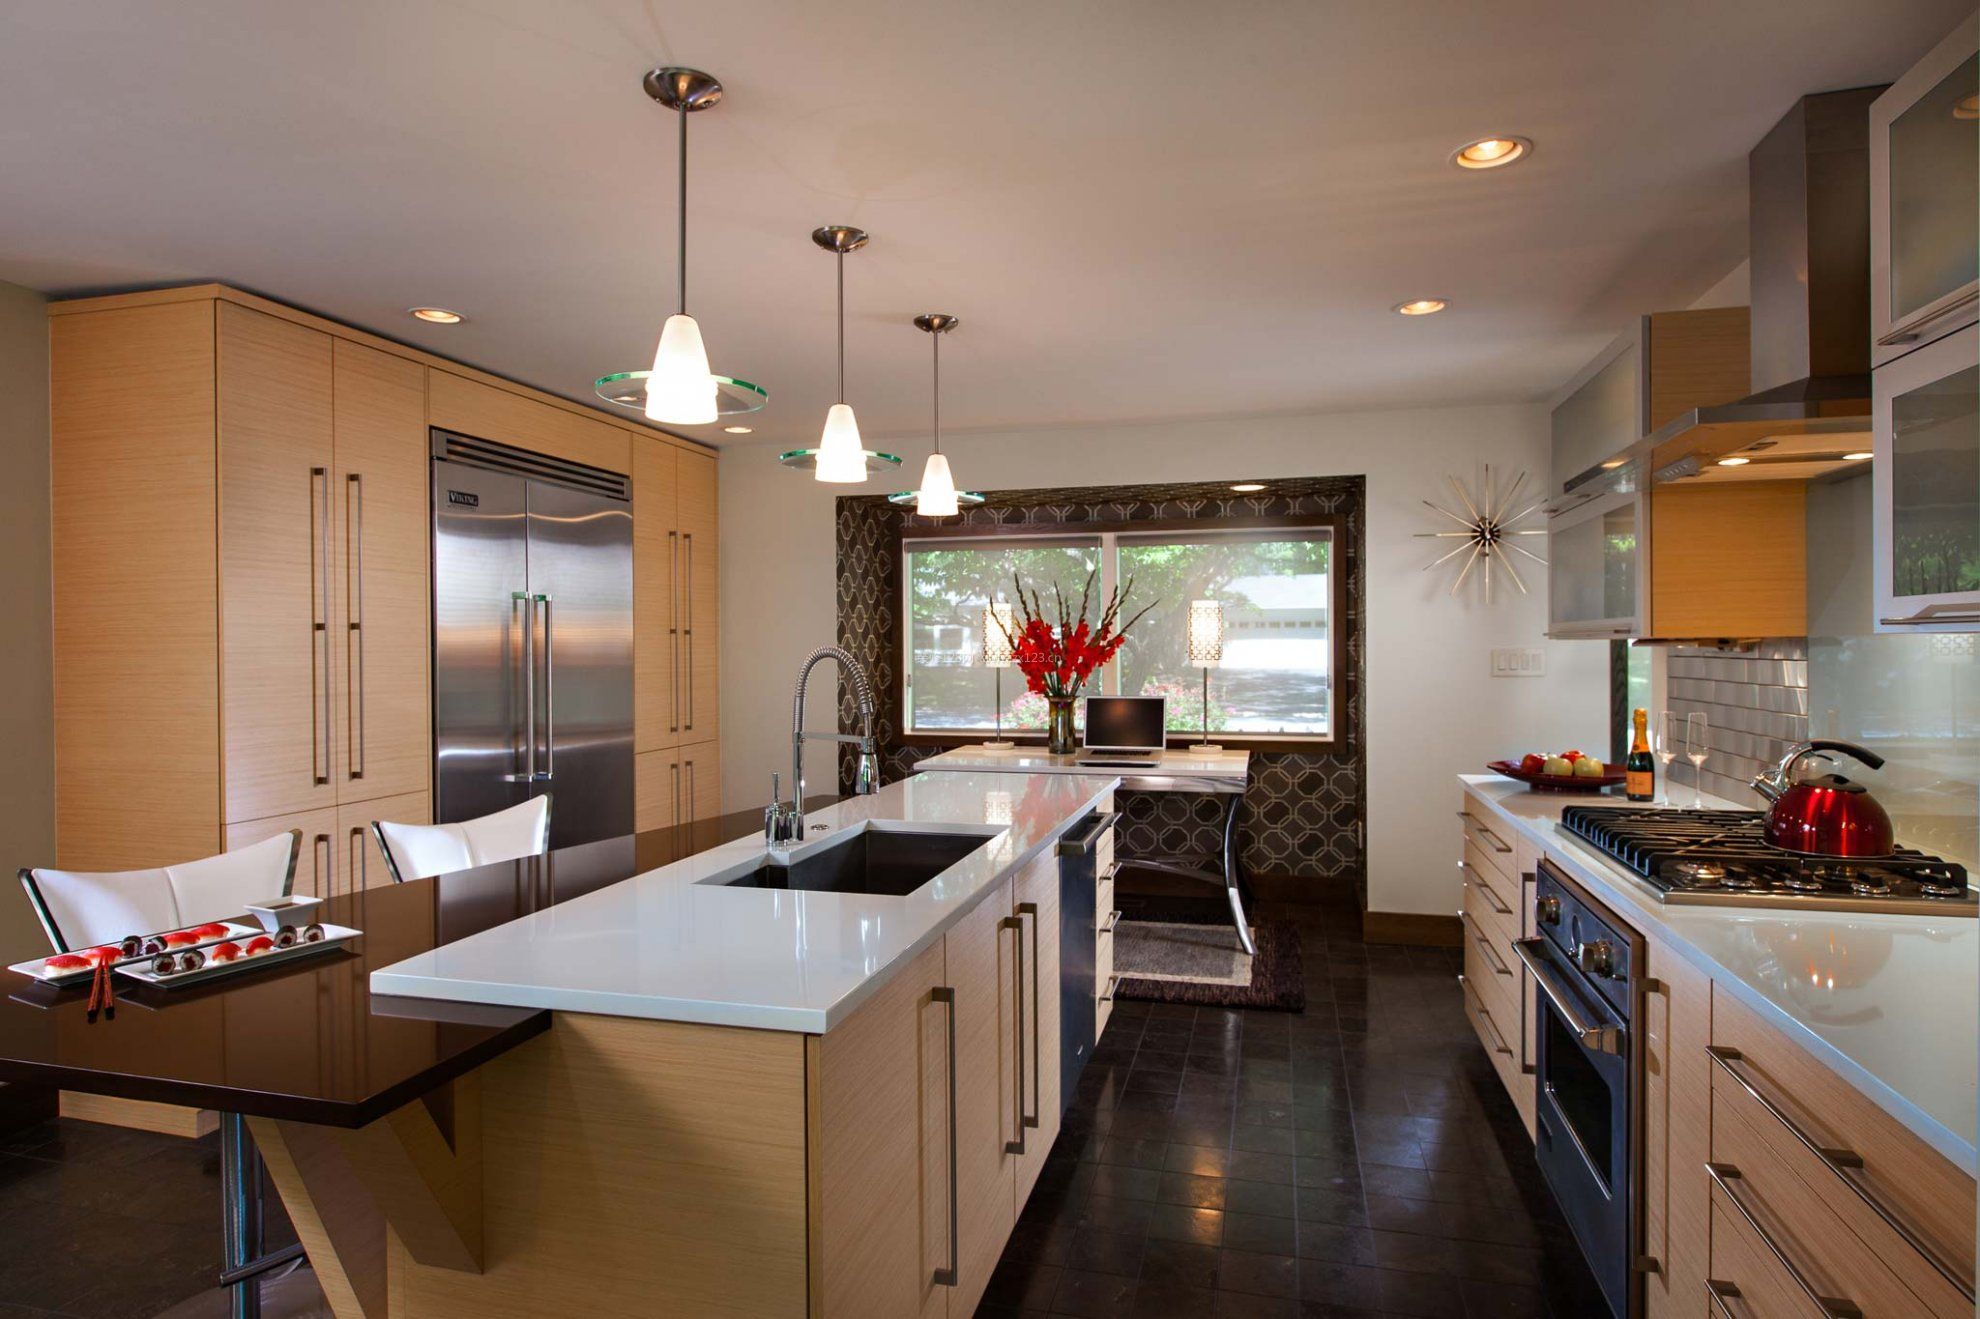 长方形开放式厨房装修风格效果图